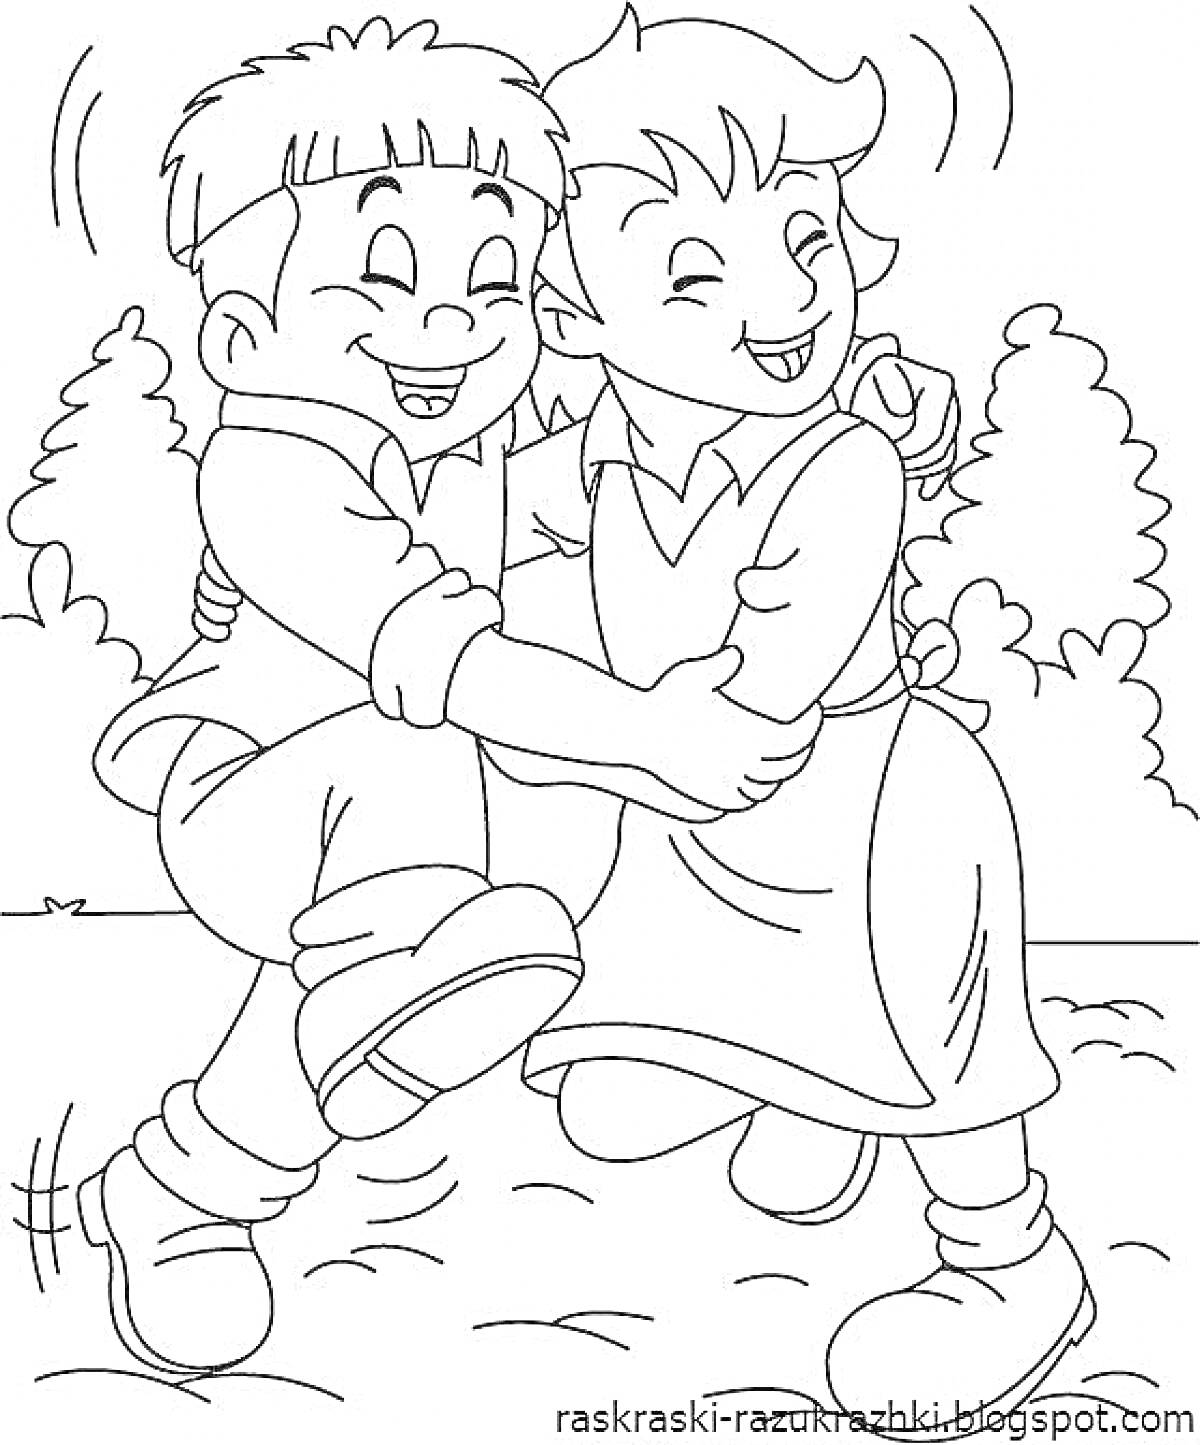 Раскраска Два ребенка, танцующих и обнимающих друг друга на улице, на фоне деревьев.